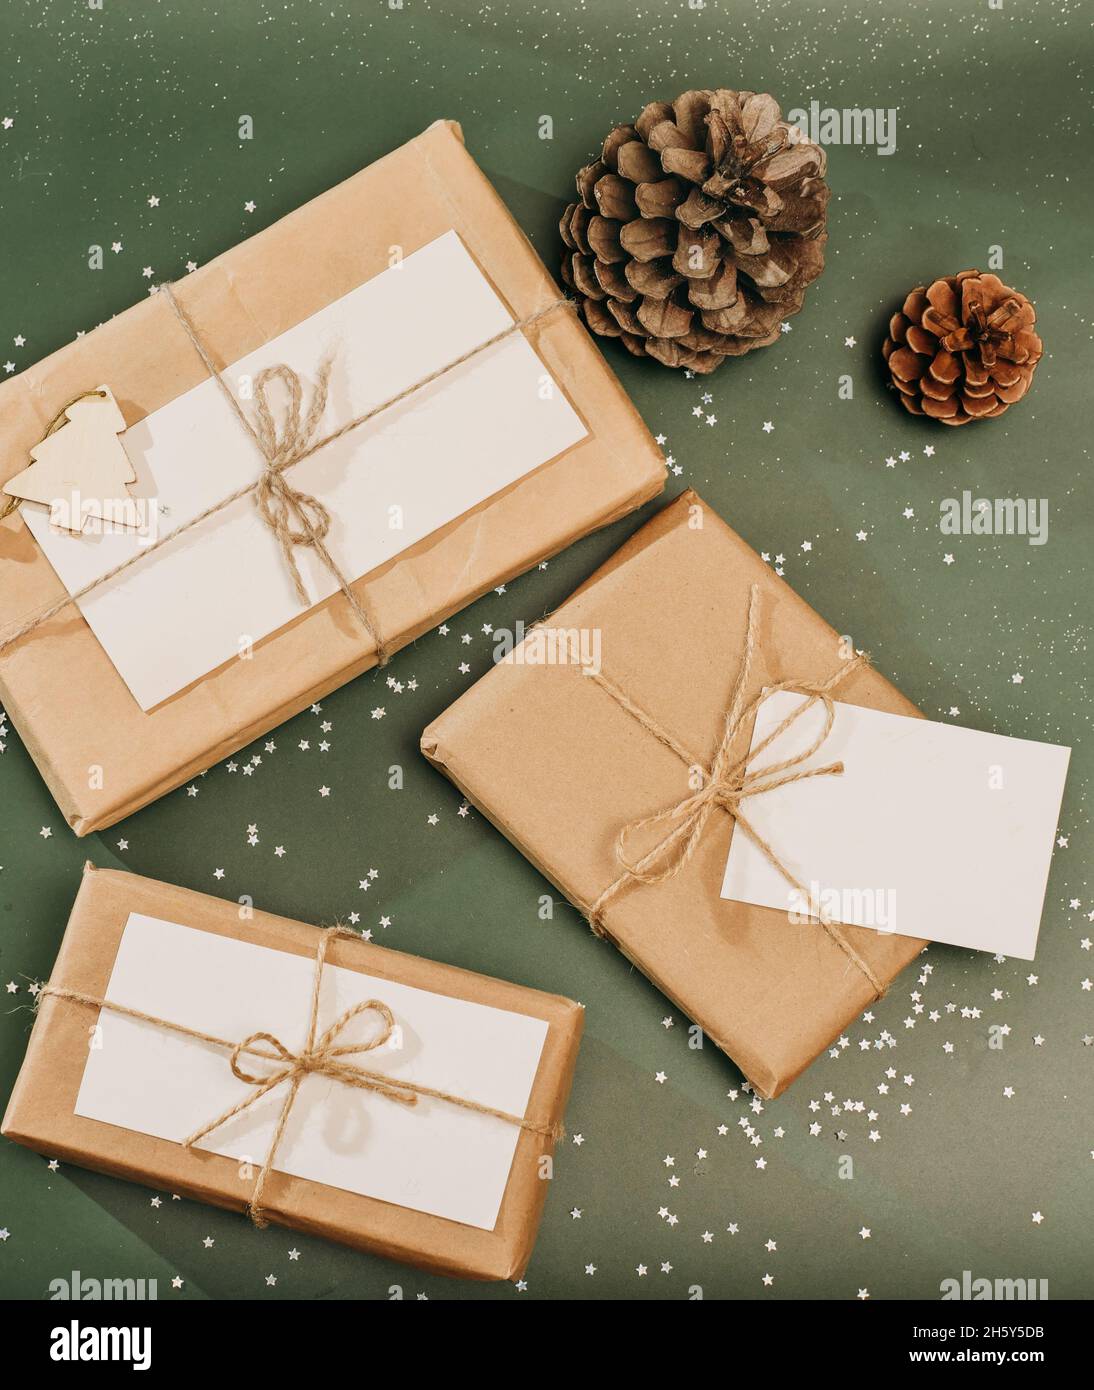 Minimal Stil weihnachten Verpackung von Geschenken. Papier Geschenk Dekor.  Öko-Geschenke mit natürlichen Tannenbaum und Tannenzapfen Dekoration auf  grünem Hintergrund Stockfotografie - Alamy